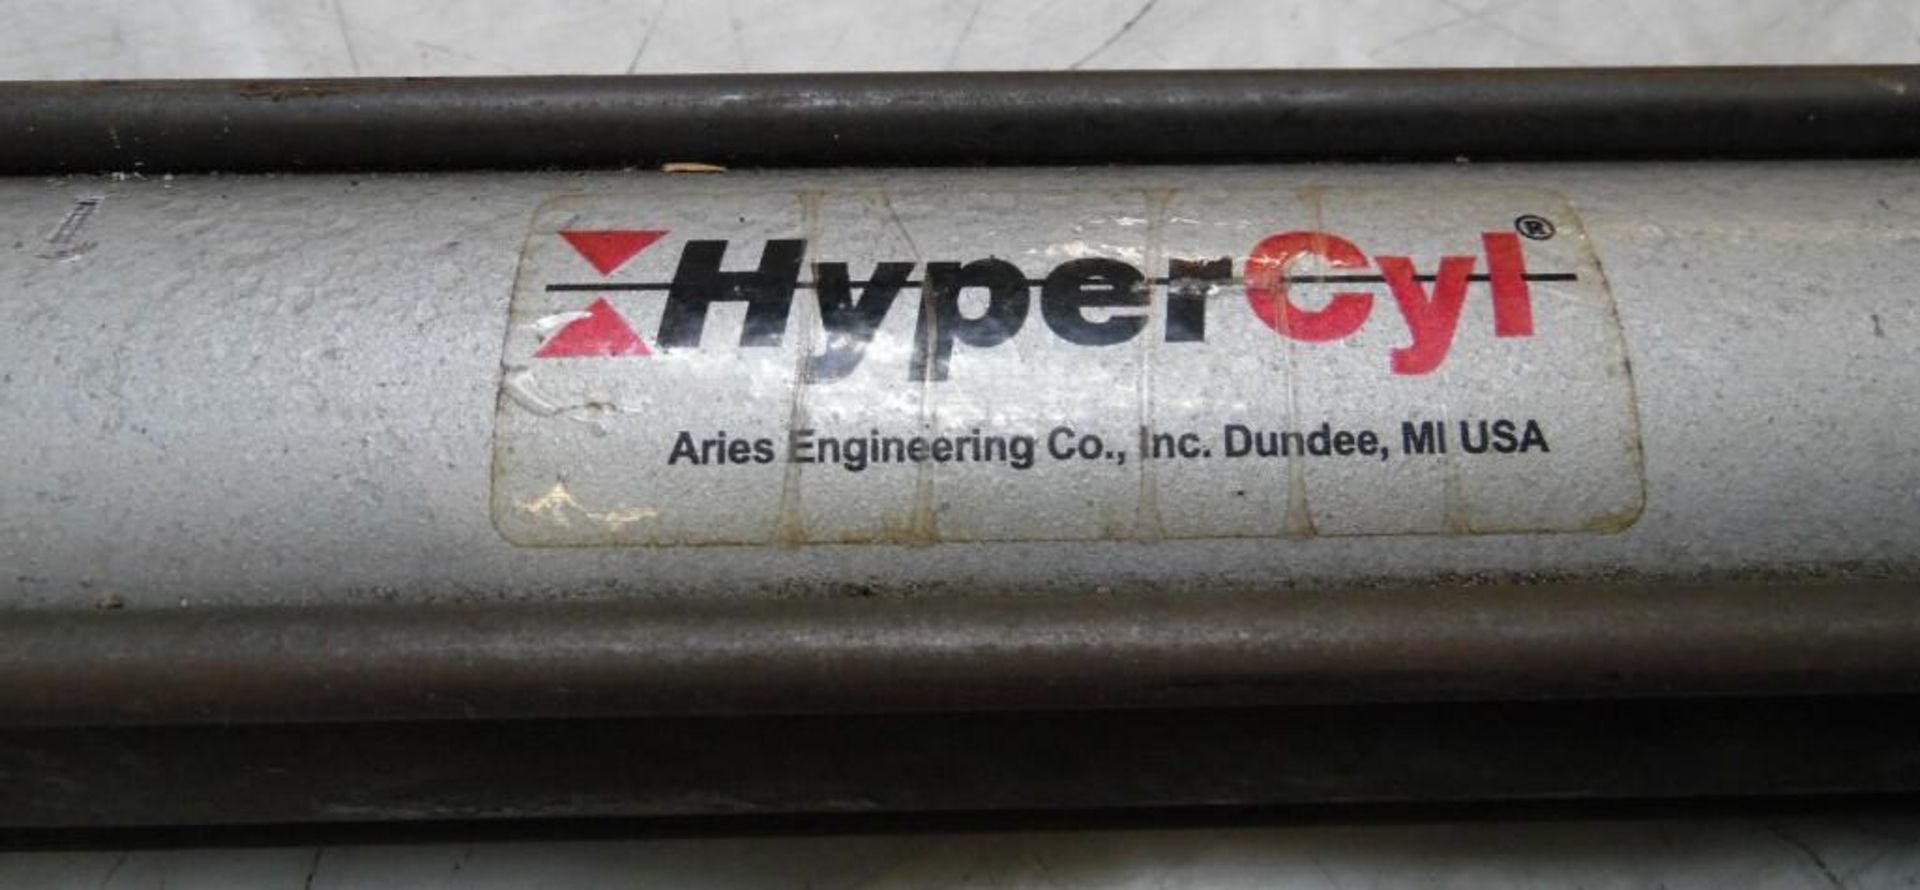 Lot of (6) Hypercyl Cylinders, # HPS-2-6-.62-FHLTLCNR - Image 2 of 3